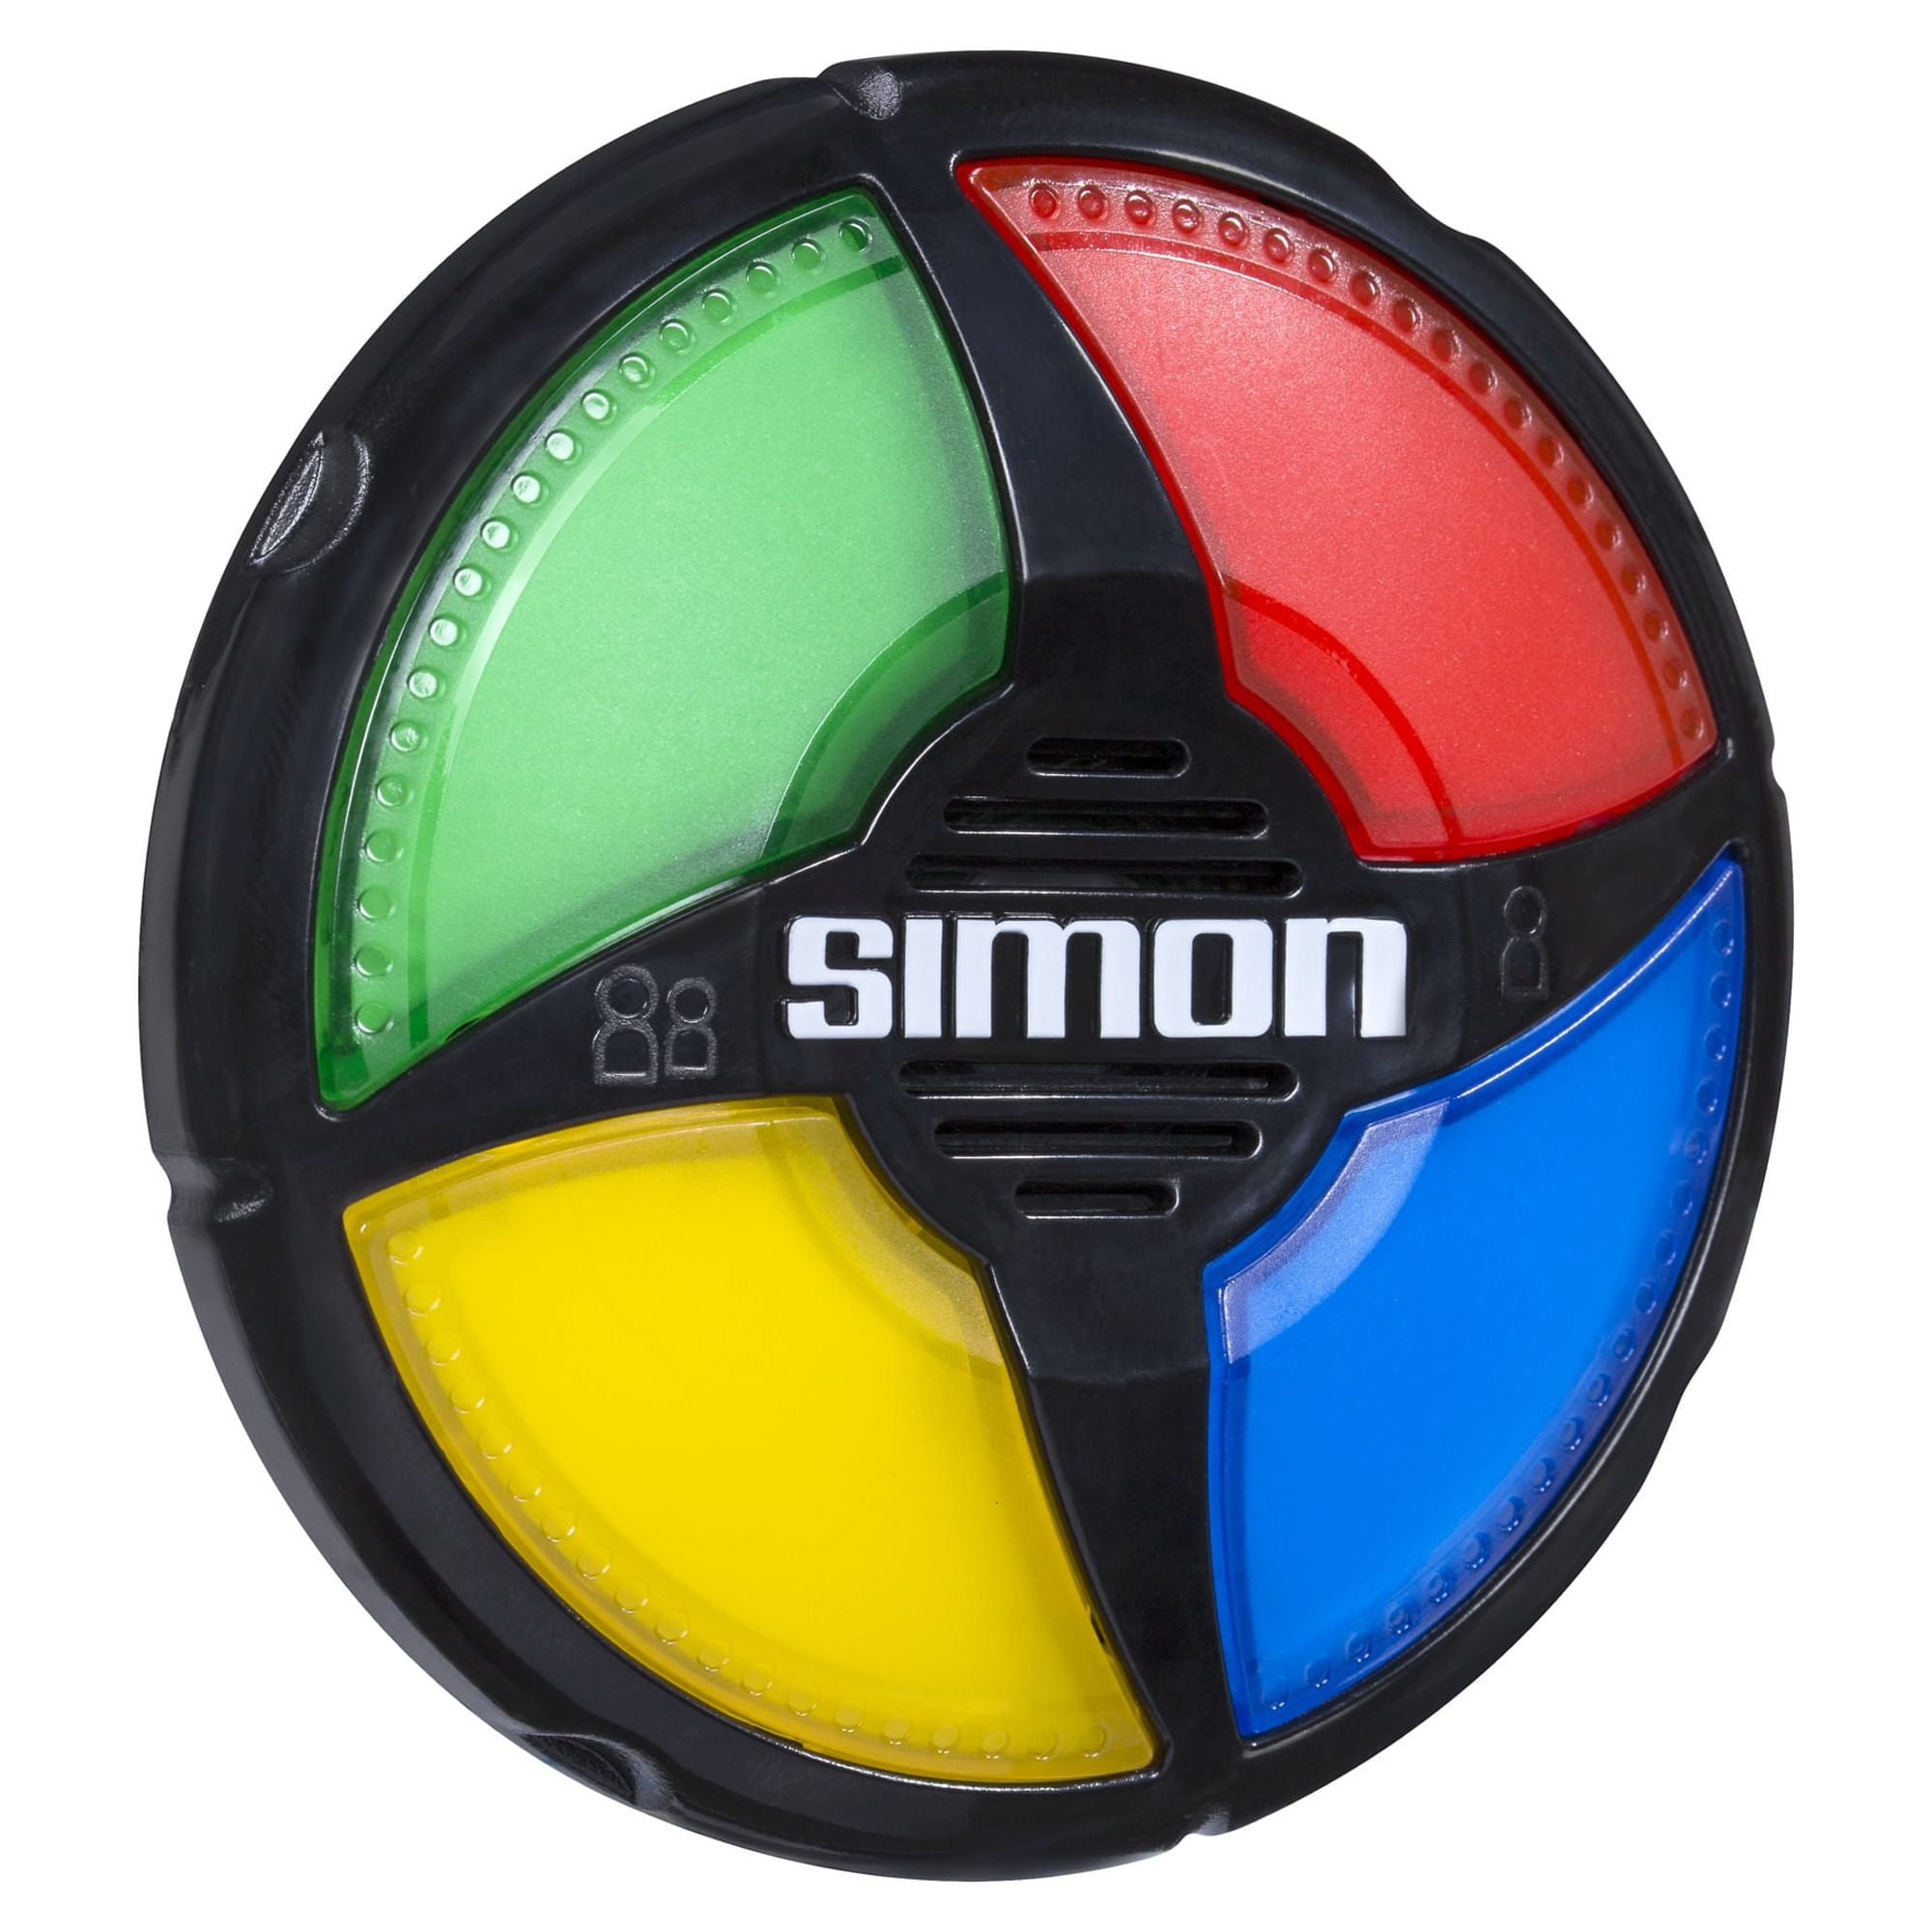 Simon Micro Series Reglas e instrucciones oficiales - Hasbro